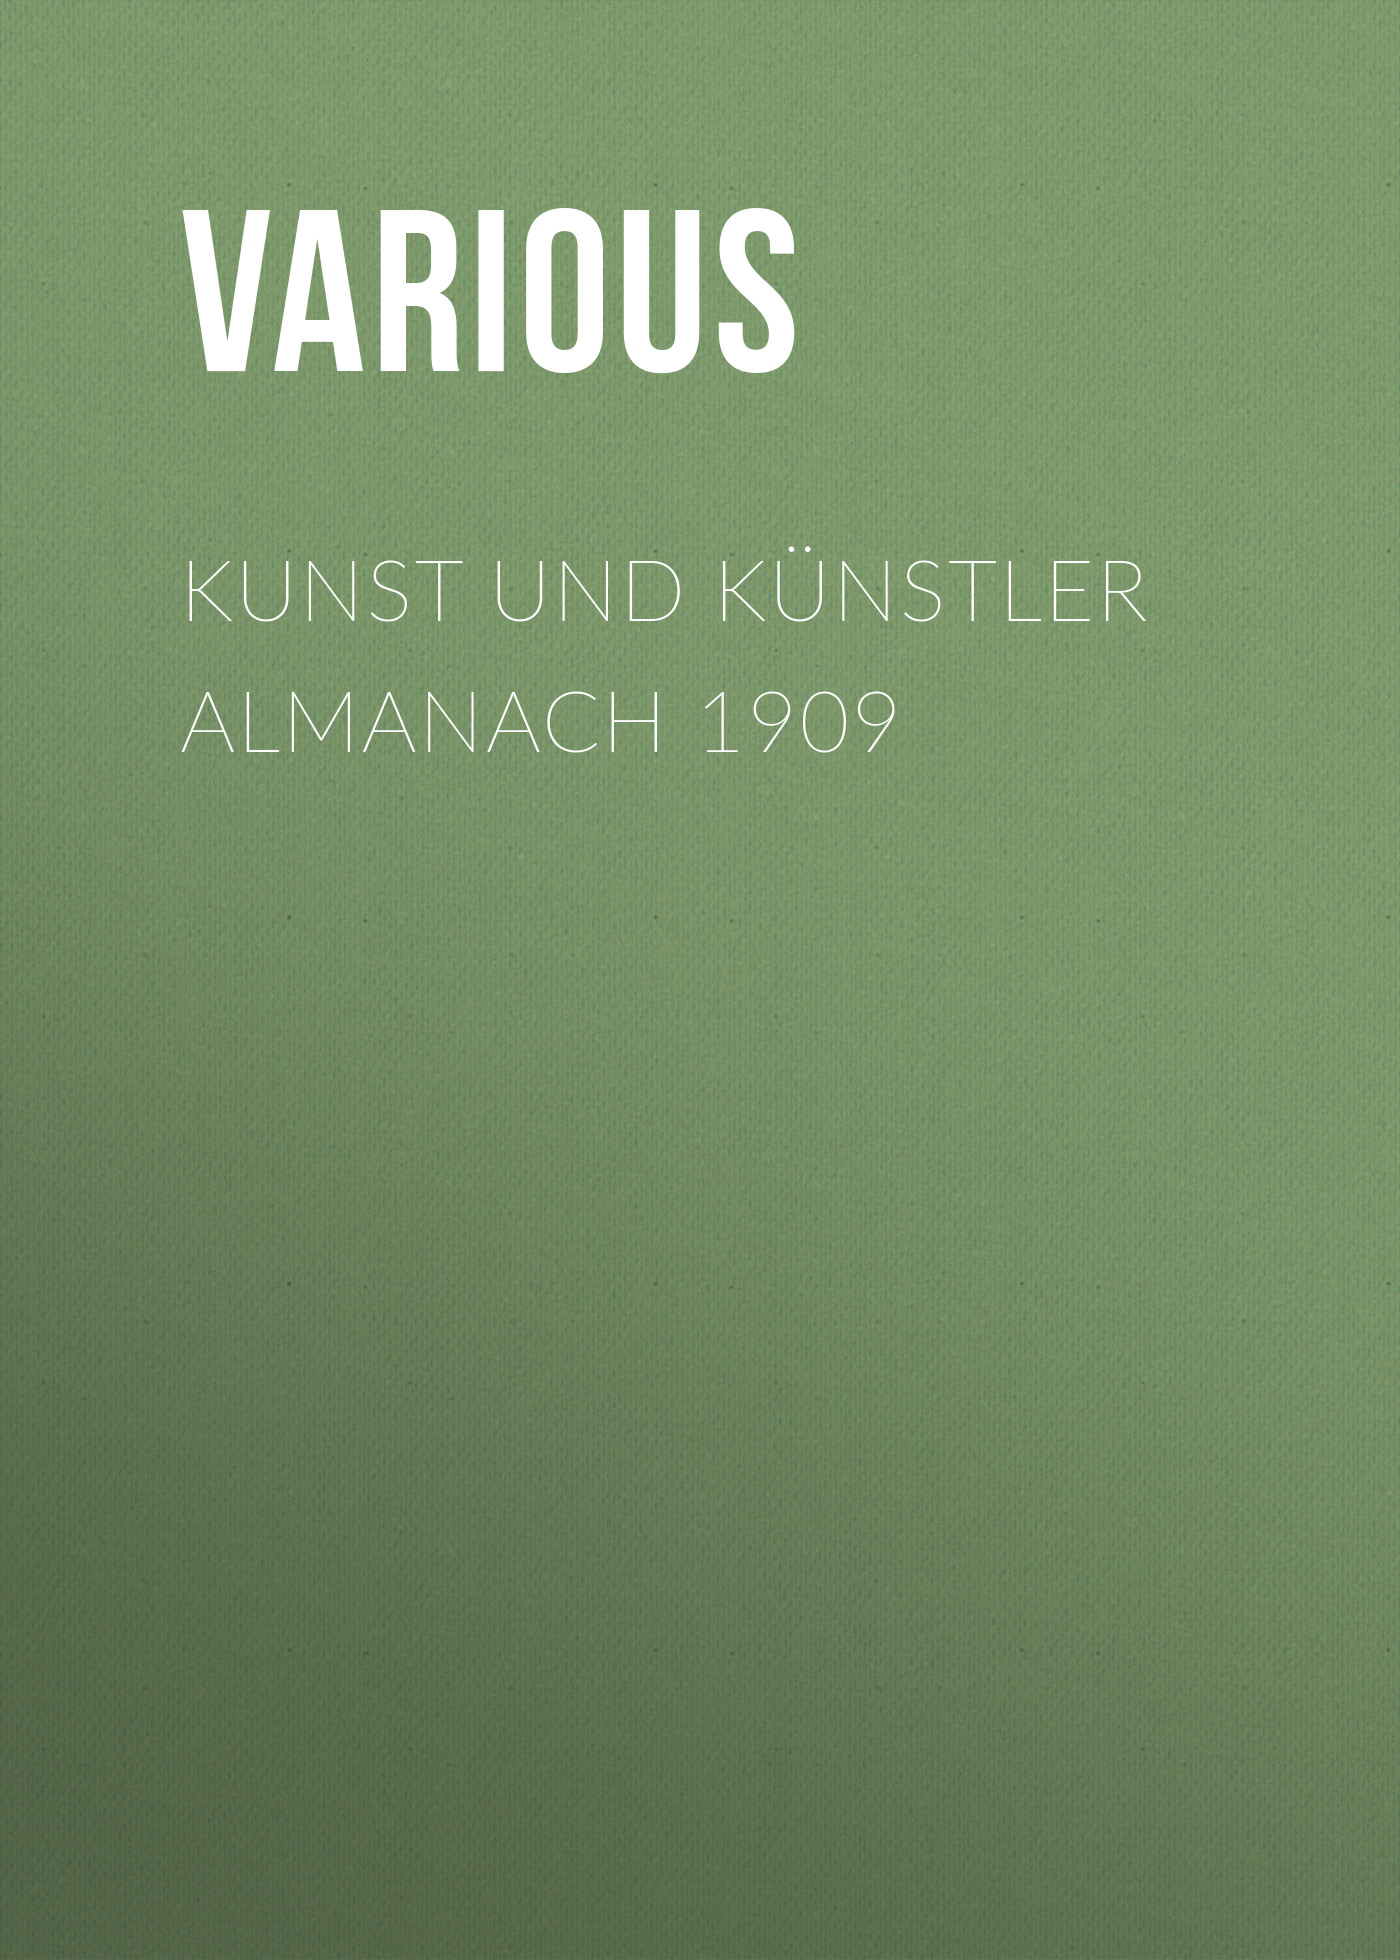 Книга Kunst und Künstler Almanach 1909 из серии , созданная  Various, может относится к жанру Журналы, Зарубежная классика. Стоимость электронной книги Kunst und Künstler Almanach 1909 с идентификатором 25717180 составляет 0 руб.